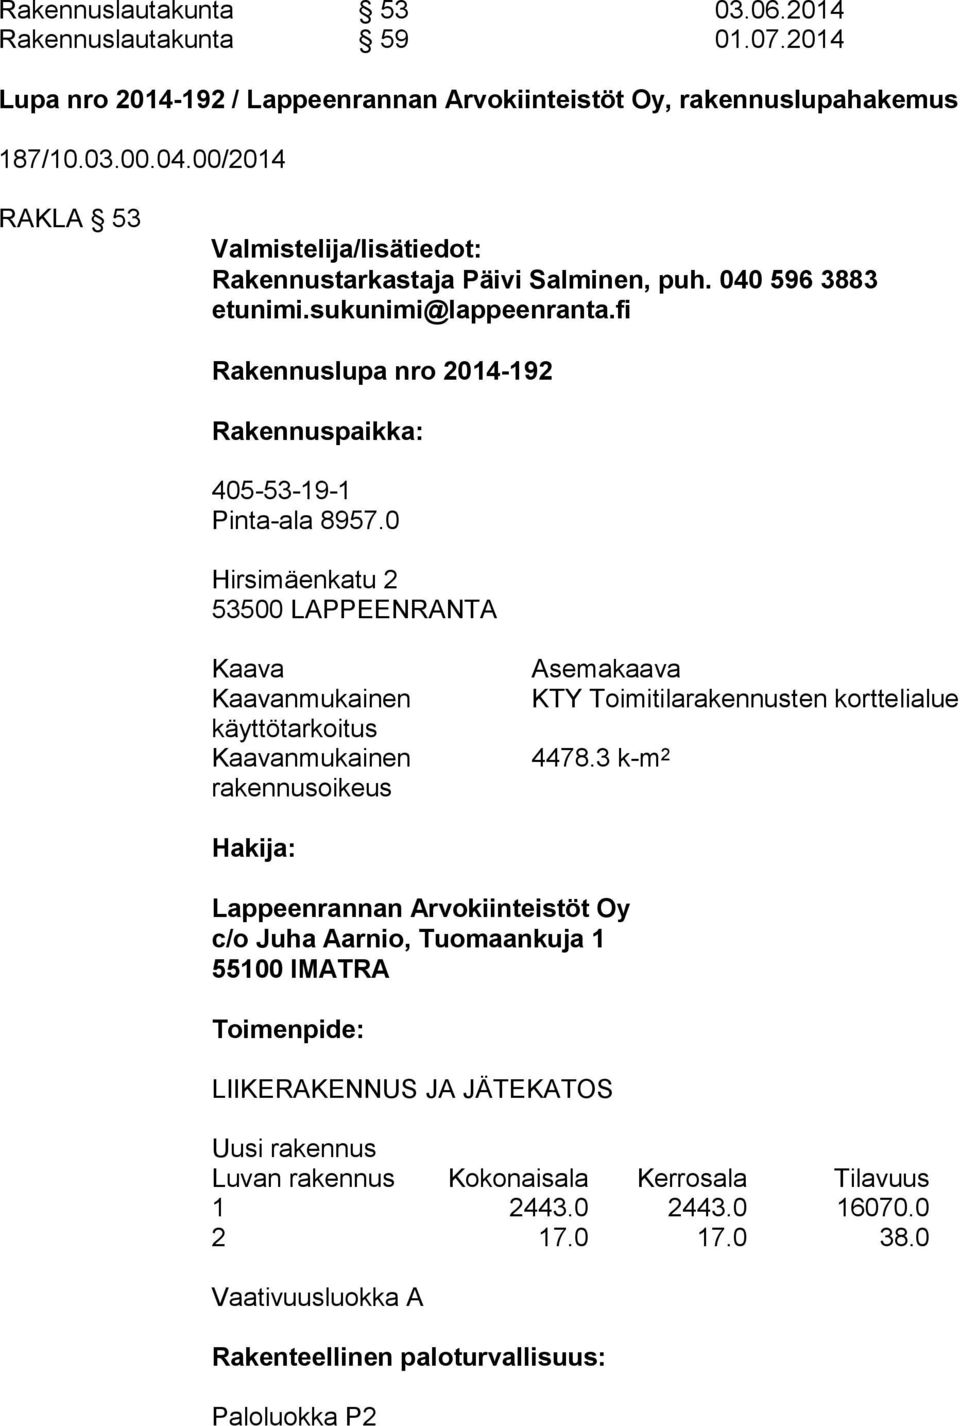 0 Hirsimäenkatu 2 53500 LAPPEENRANTA Kaava Kaavanmukainen käyttötarkoitus Kaavanmukainen rakennusoikeus Asemakaava KTY Toimitilarakennusten korttelialue 4478.